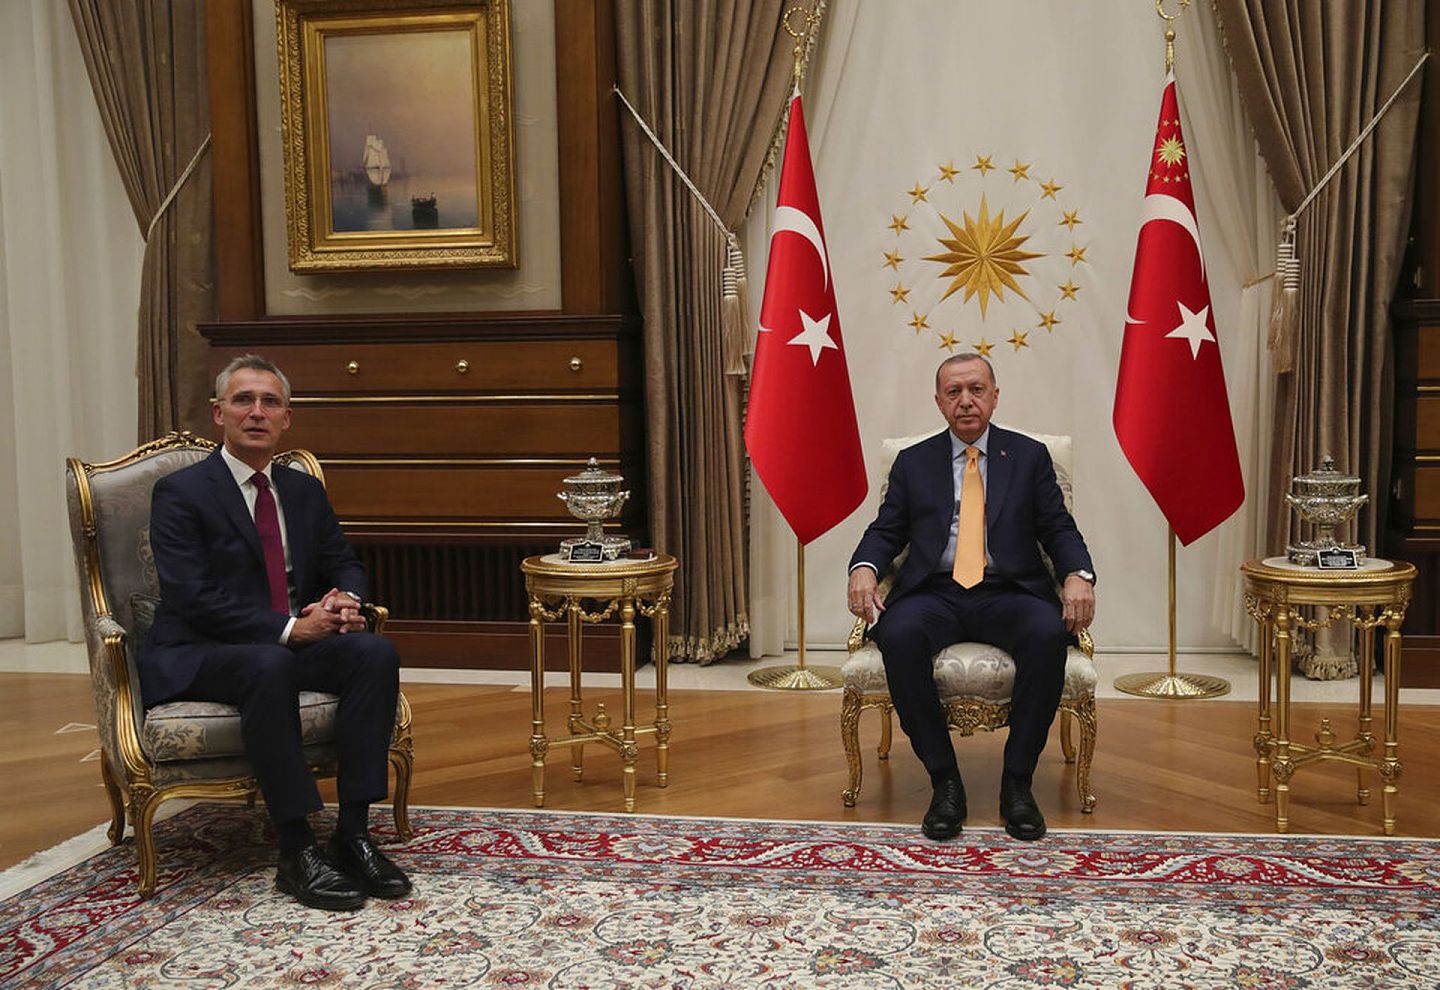 2020年10月5日，土耳其总统埃尔多安在安卡拉的总统府接见到访的北约秘书长斯托尔腾贝格（Jens Stoltenberg，左）。双方围绕纳卡冲突议题进行协商，后者希望土耳其协助平息战事，但埃尔多安则对北约盟国的和稀泥态度多有批评。（美联社）